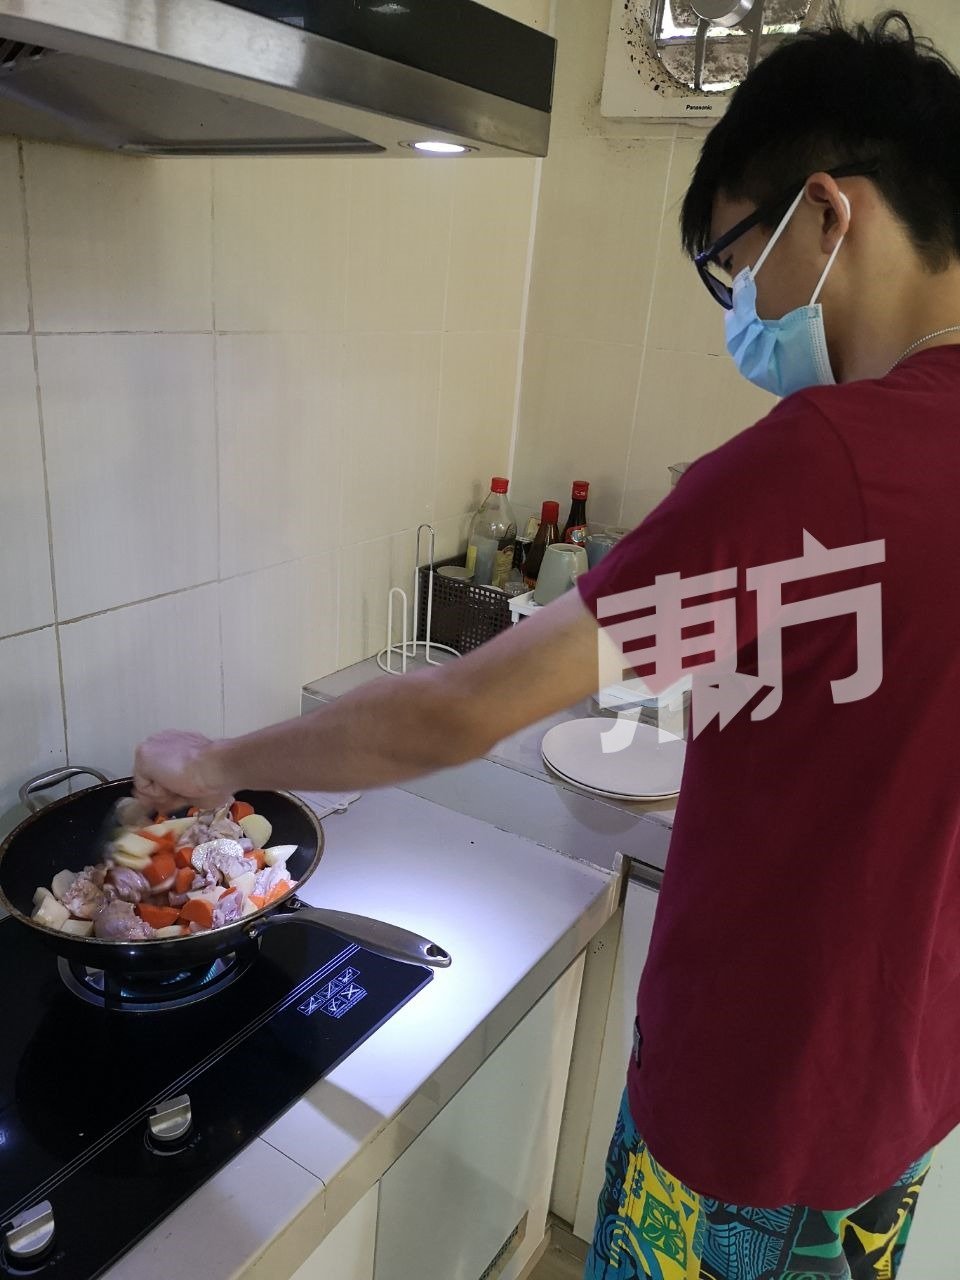 在物理治疗师的指导下，他在NASAM学会煮日式咖喱，但回到家后忘了其步骤，加上家人担心他受伤，因而未能成功煮一顿饭给家人吃。